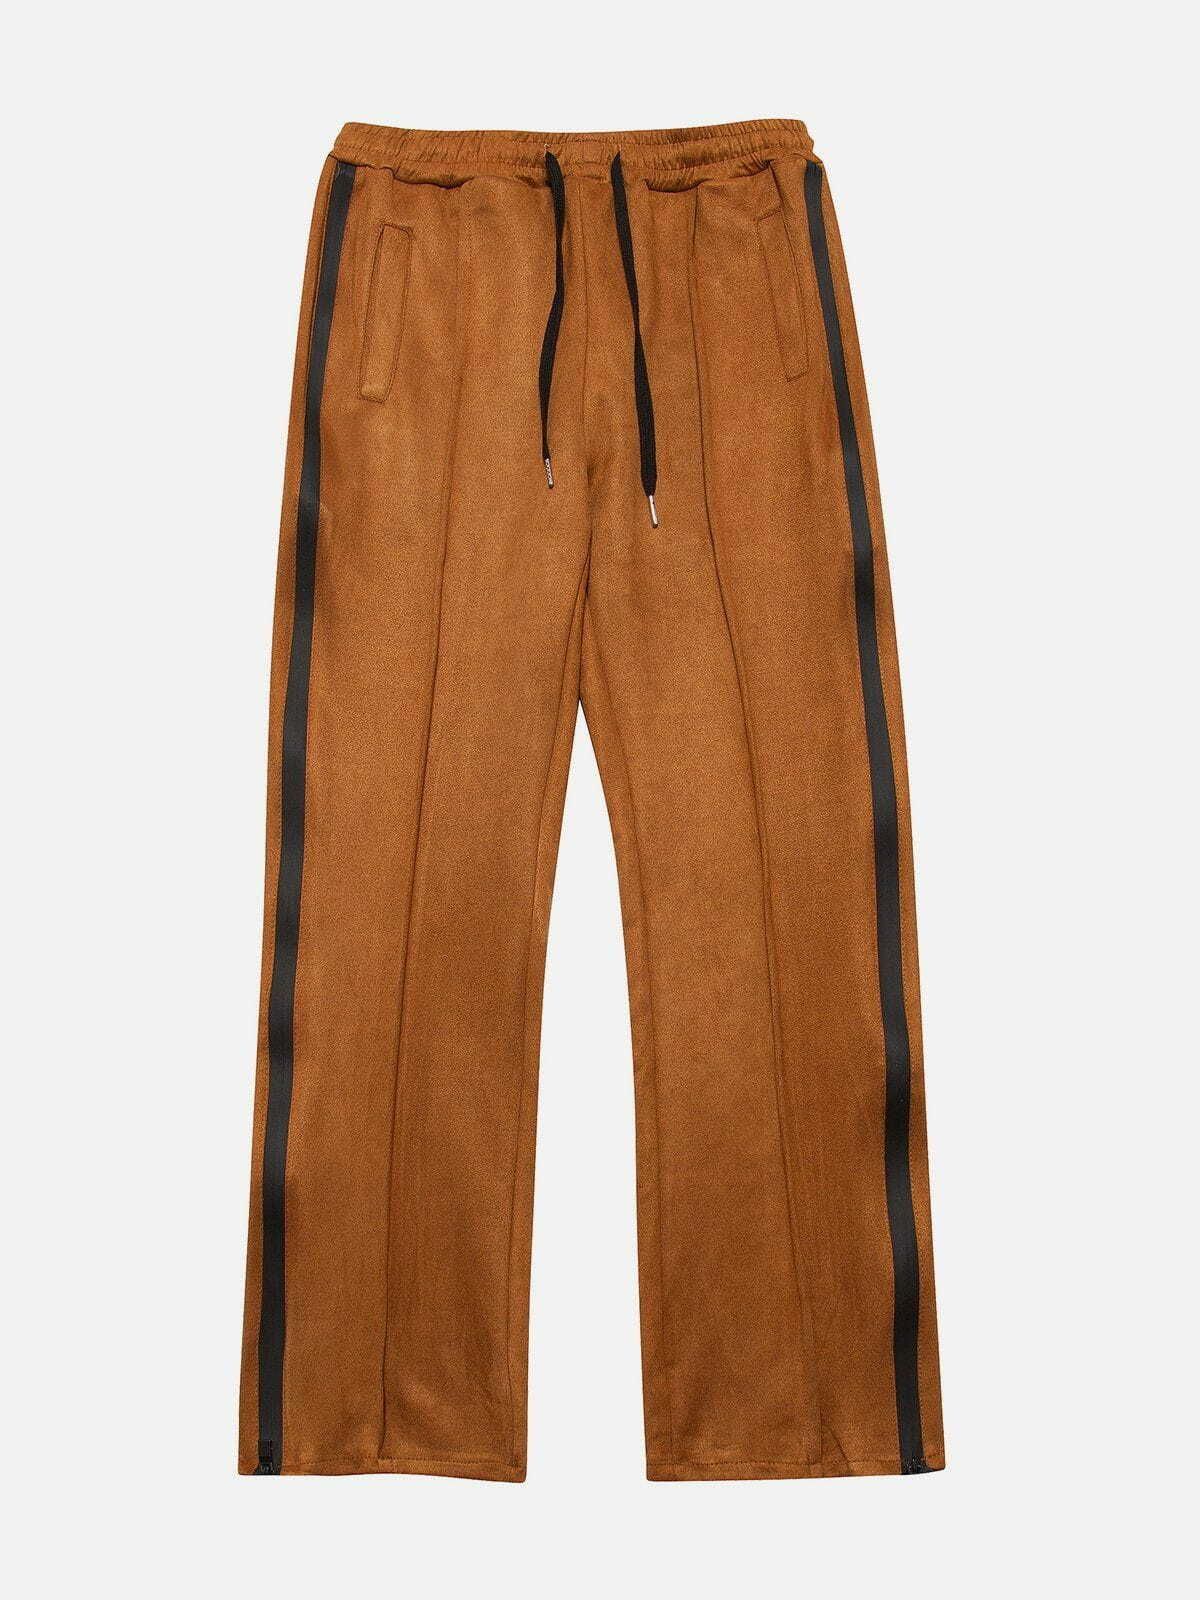 suede side zip sweatpants edgy & stylish streetwear 7324